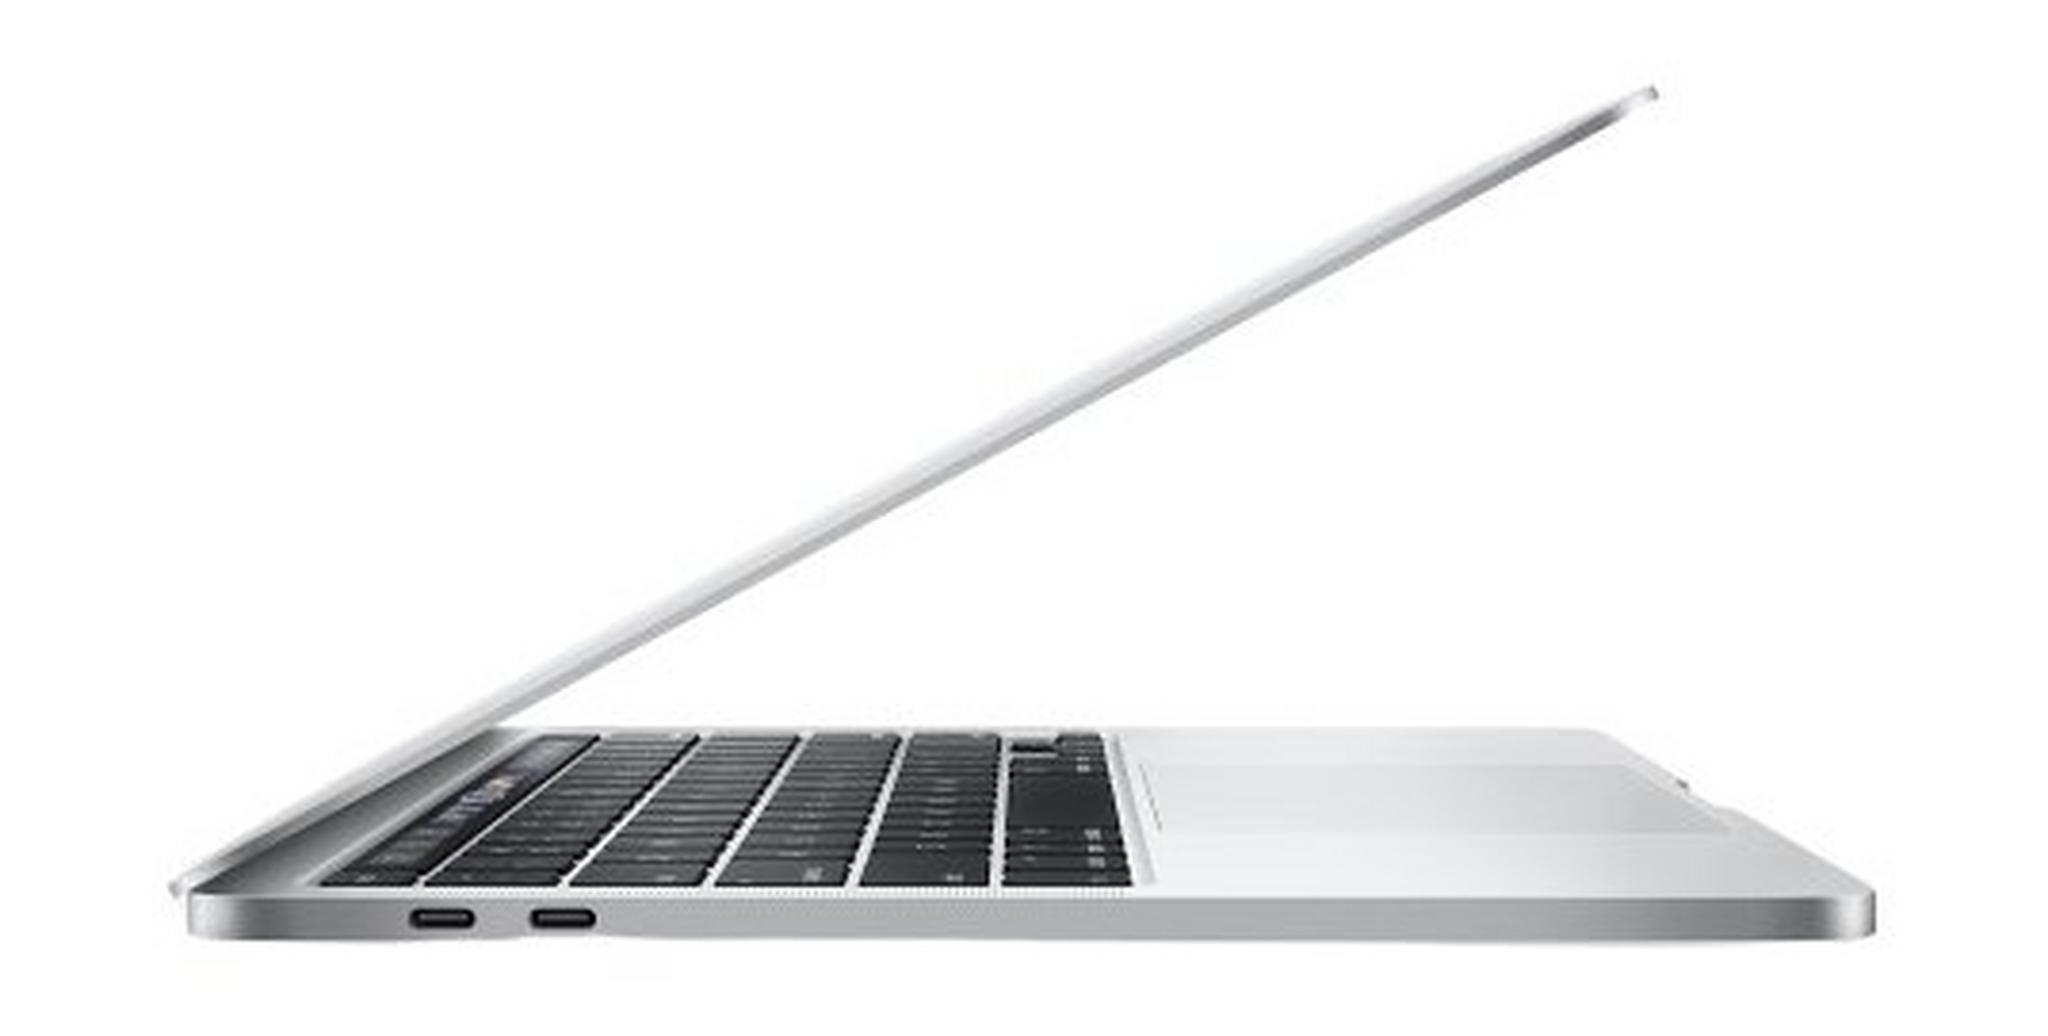 Apple Macbook Pro 10th Gen Core i5 16GB RAM 1TB SSD 13.3-inch Laptop (MWP82AB/A) - Silver